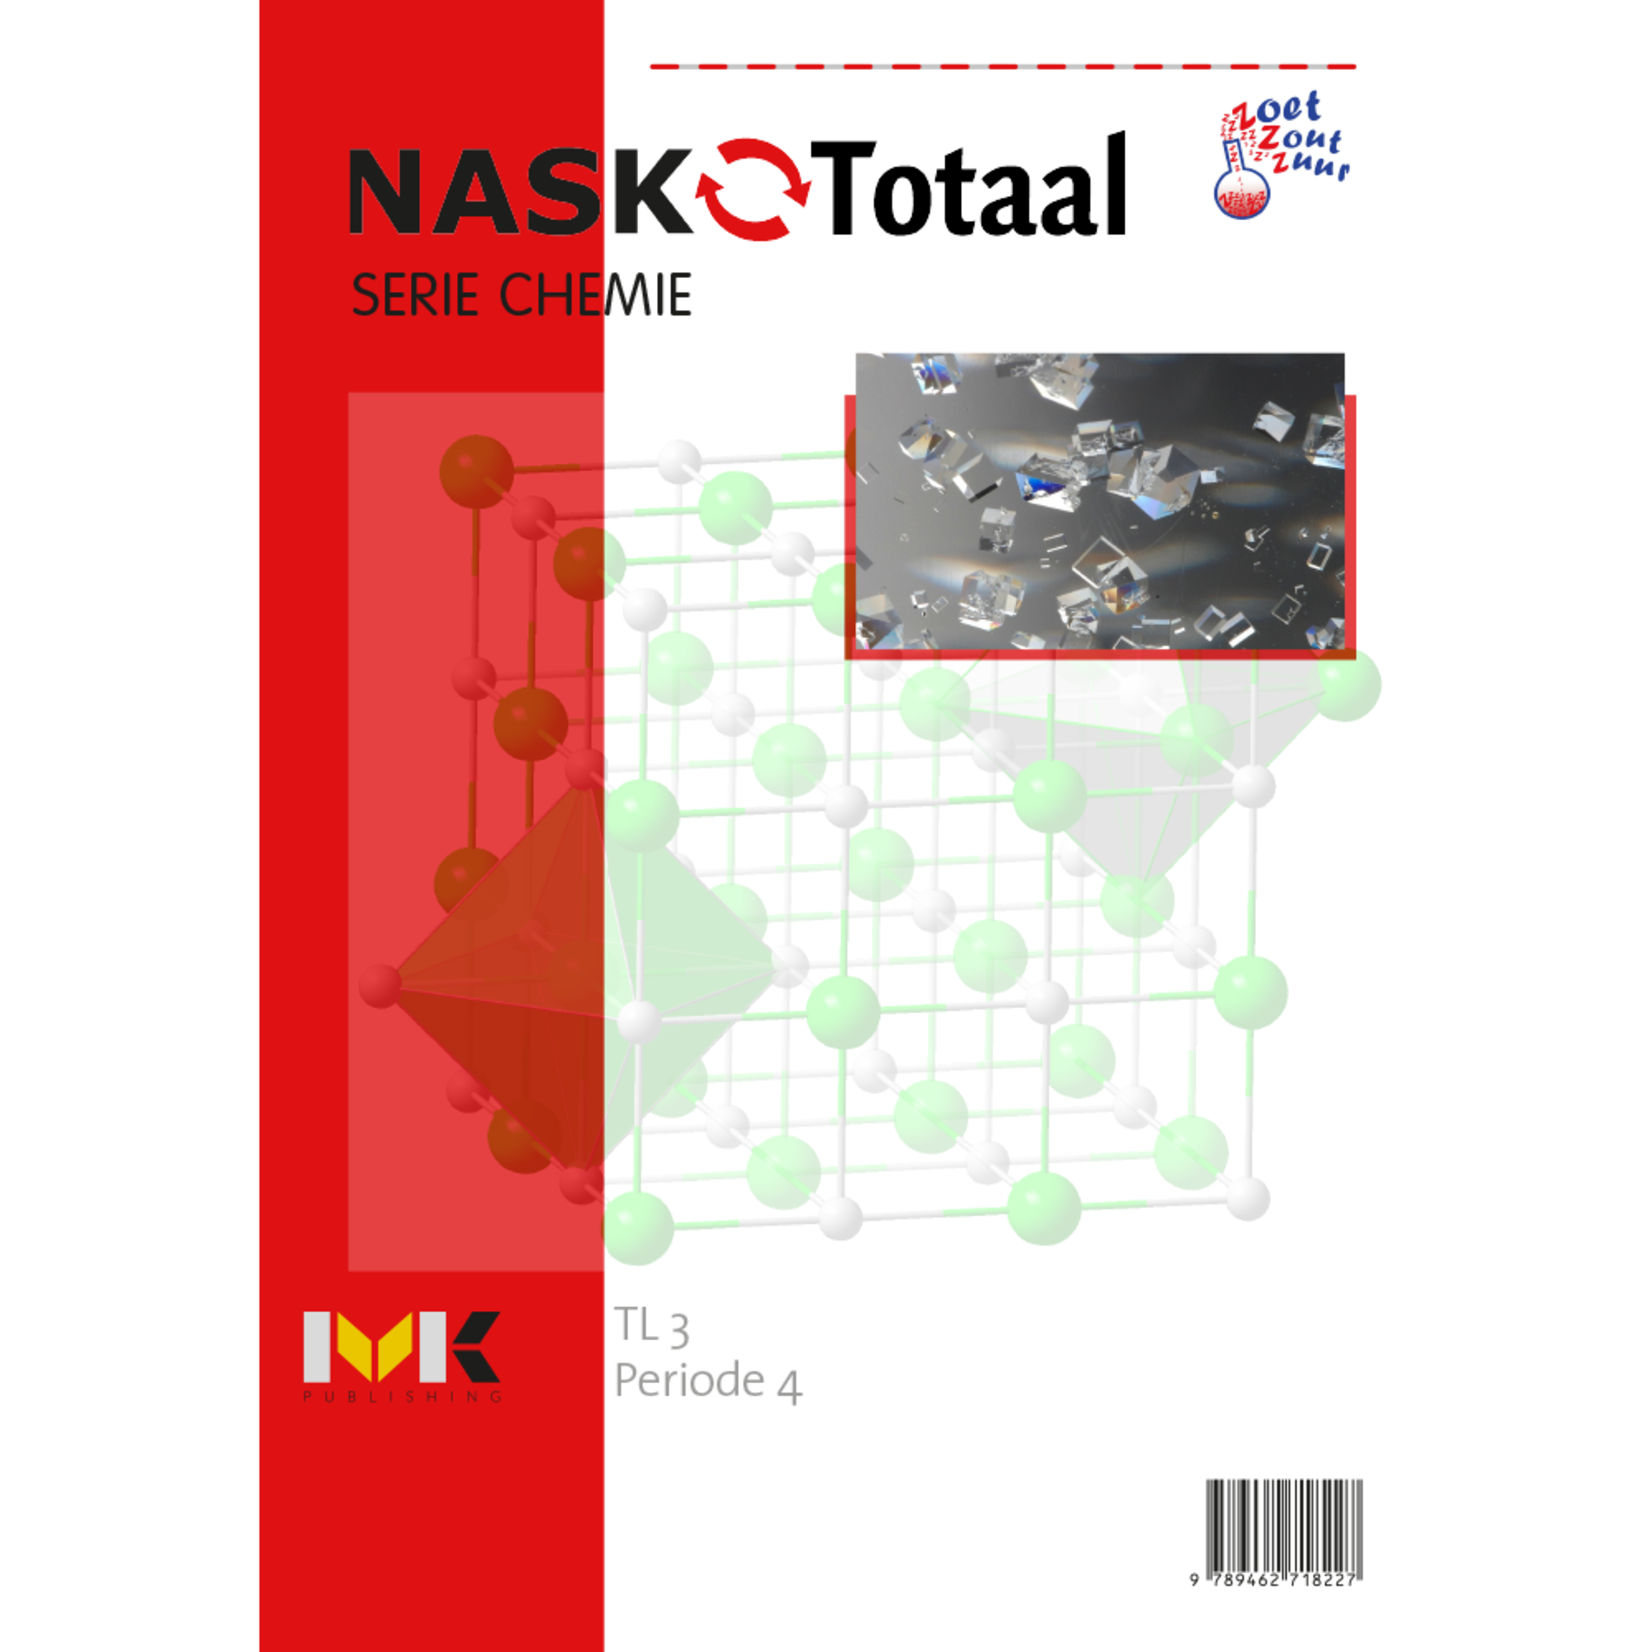 NASK-Totaal - Zoetzoutzuur serie chemie TL 3 - werkboek periode 4